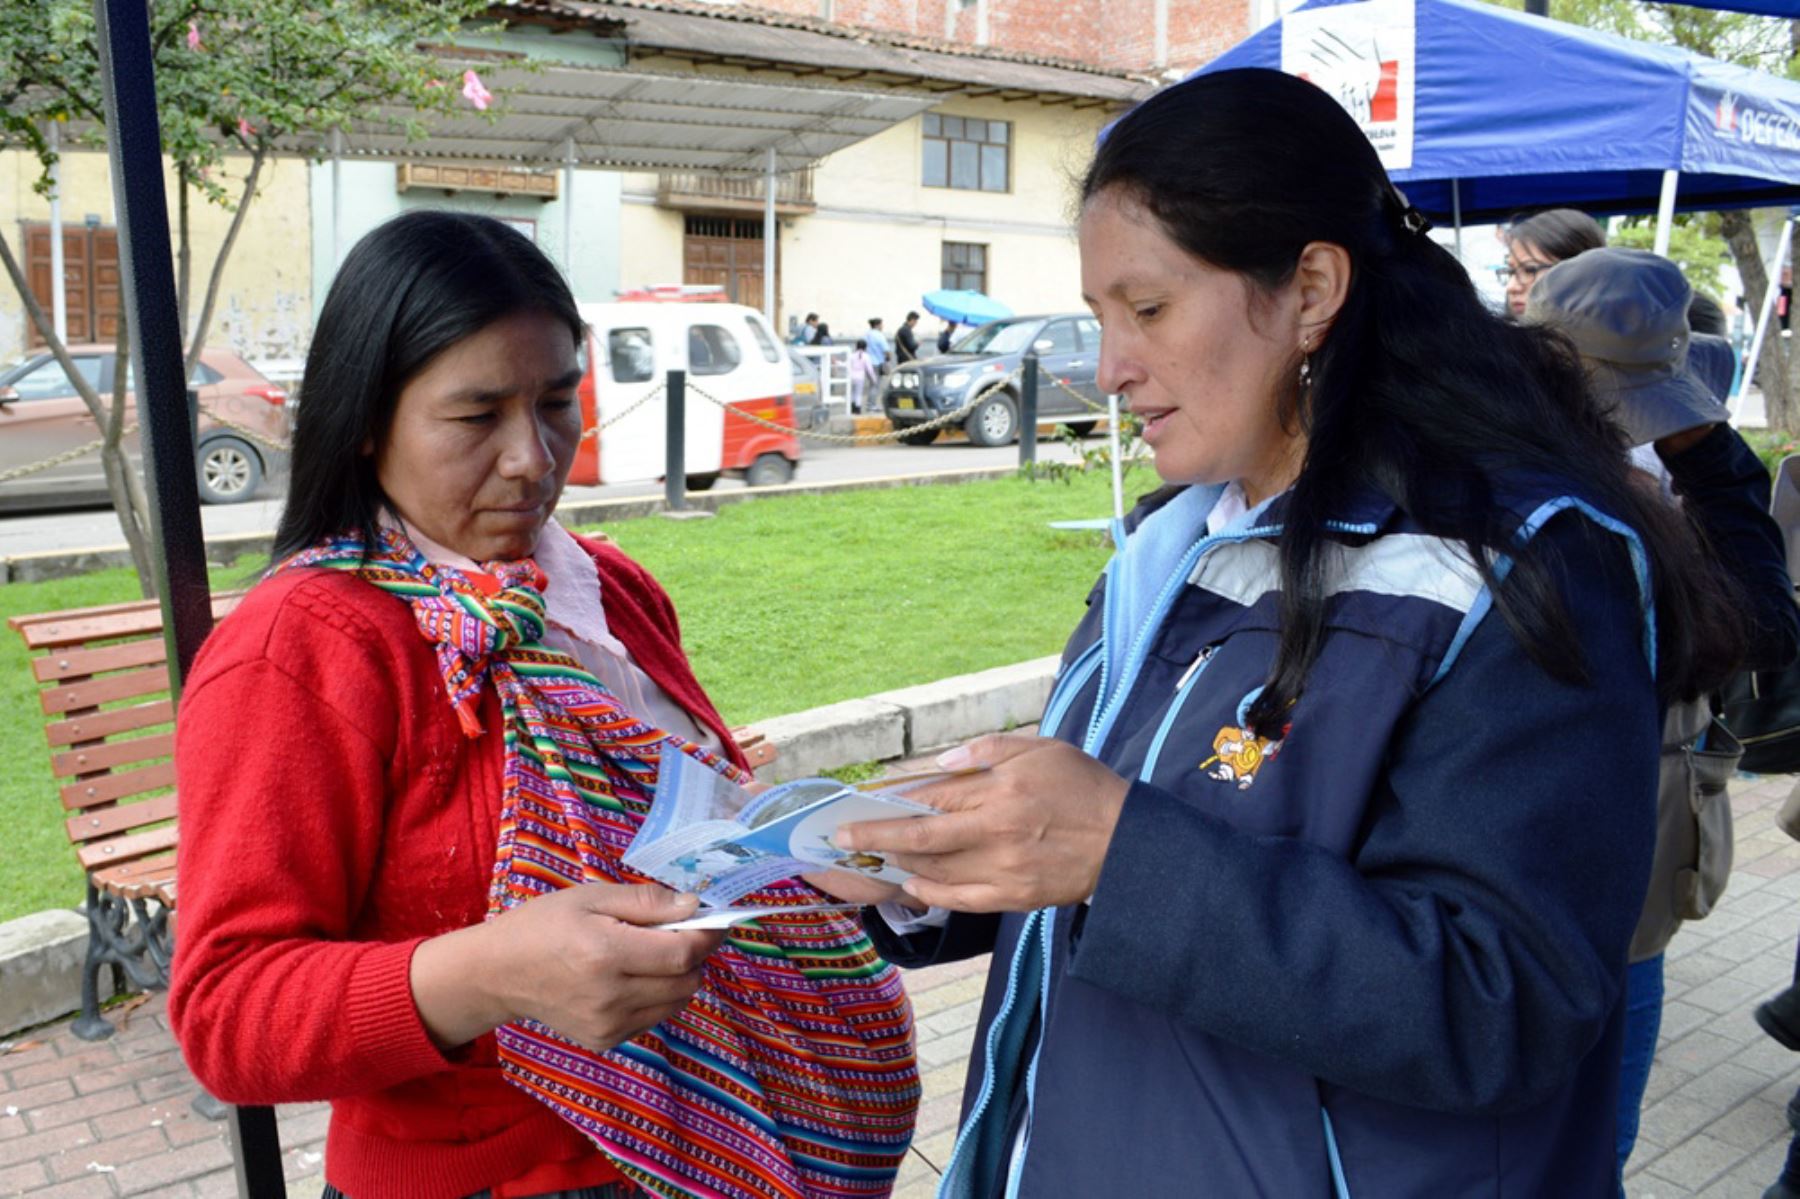 Sunass desarrolló la campaña “Uso responsable del agua en el carnaval” en la plazuela La Recoleta de Cajamarca.